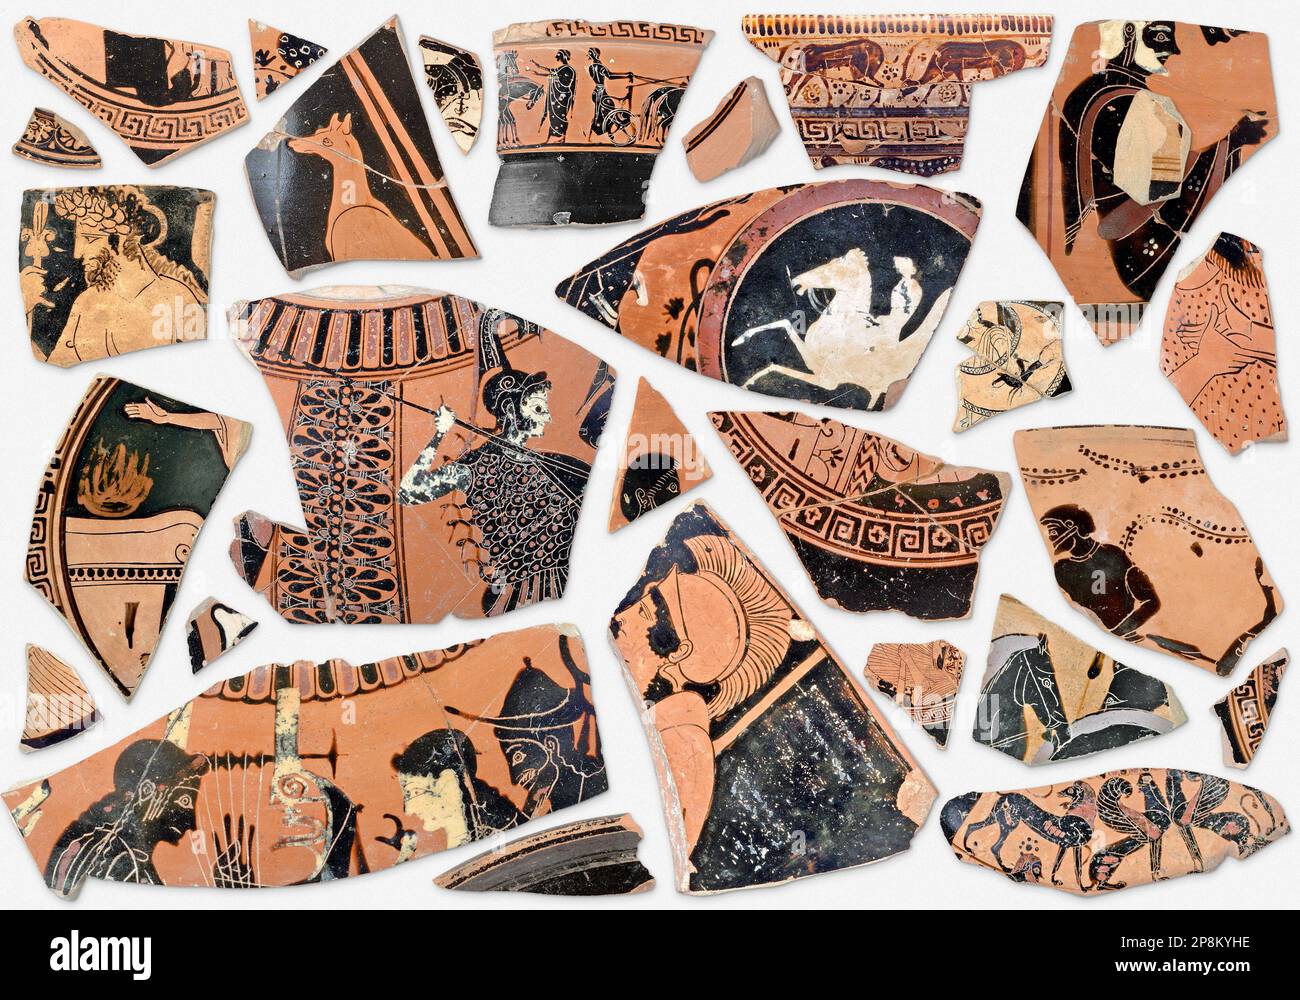 Hintergrund alter klassischer, griechischer Terrakotta-Fragmente, Sammlung antiker Keramikstücke aus zerbrochener Vase, Amphora, Krug und Glas Stockfoto